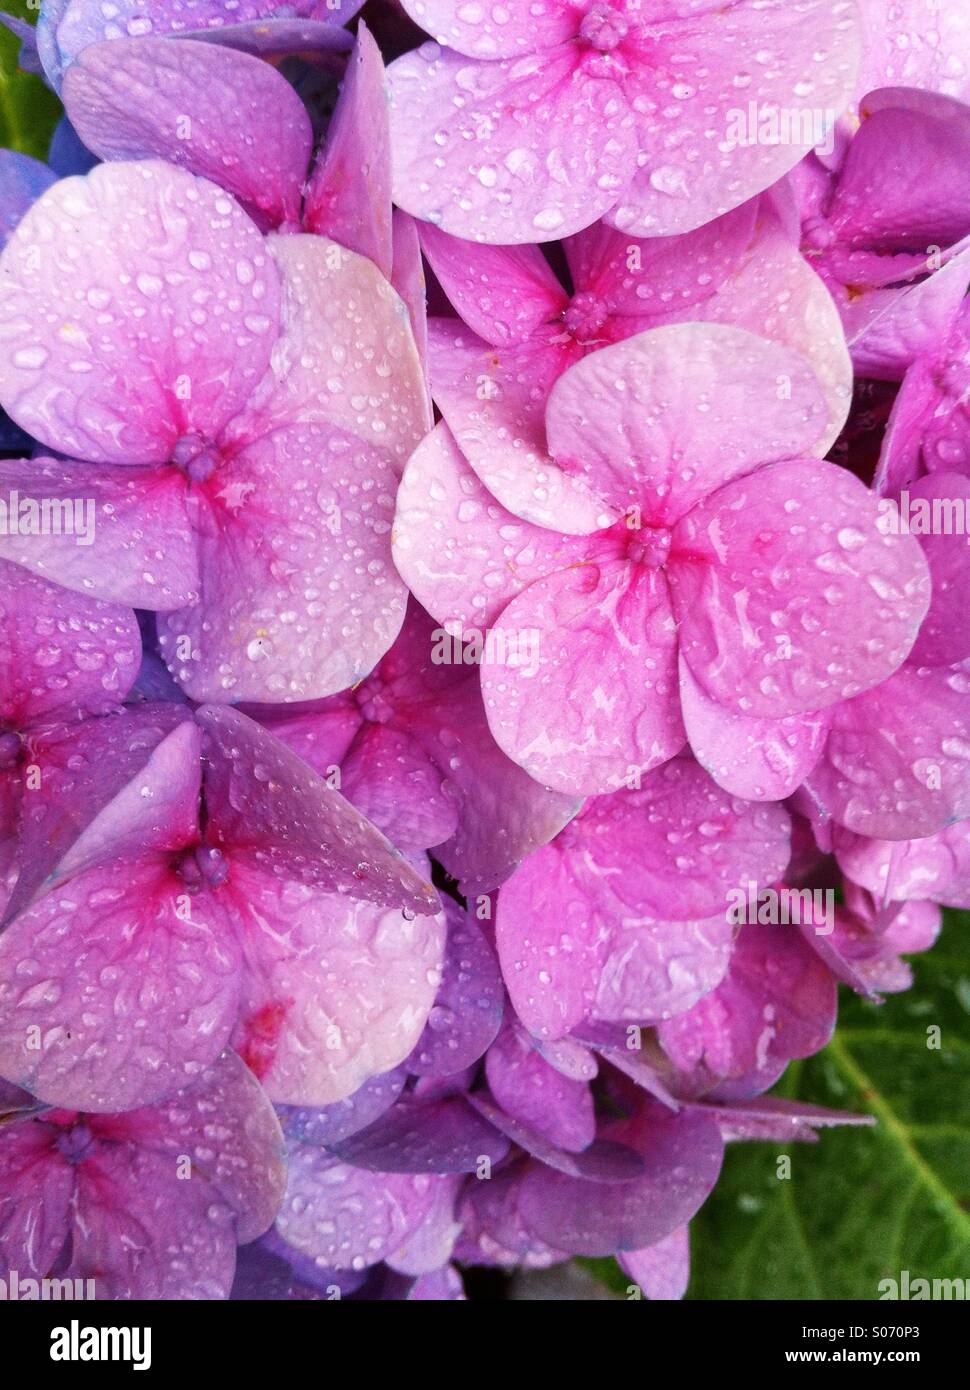 rain on hydrangea blossom Stock Photo